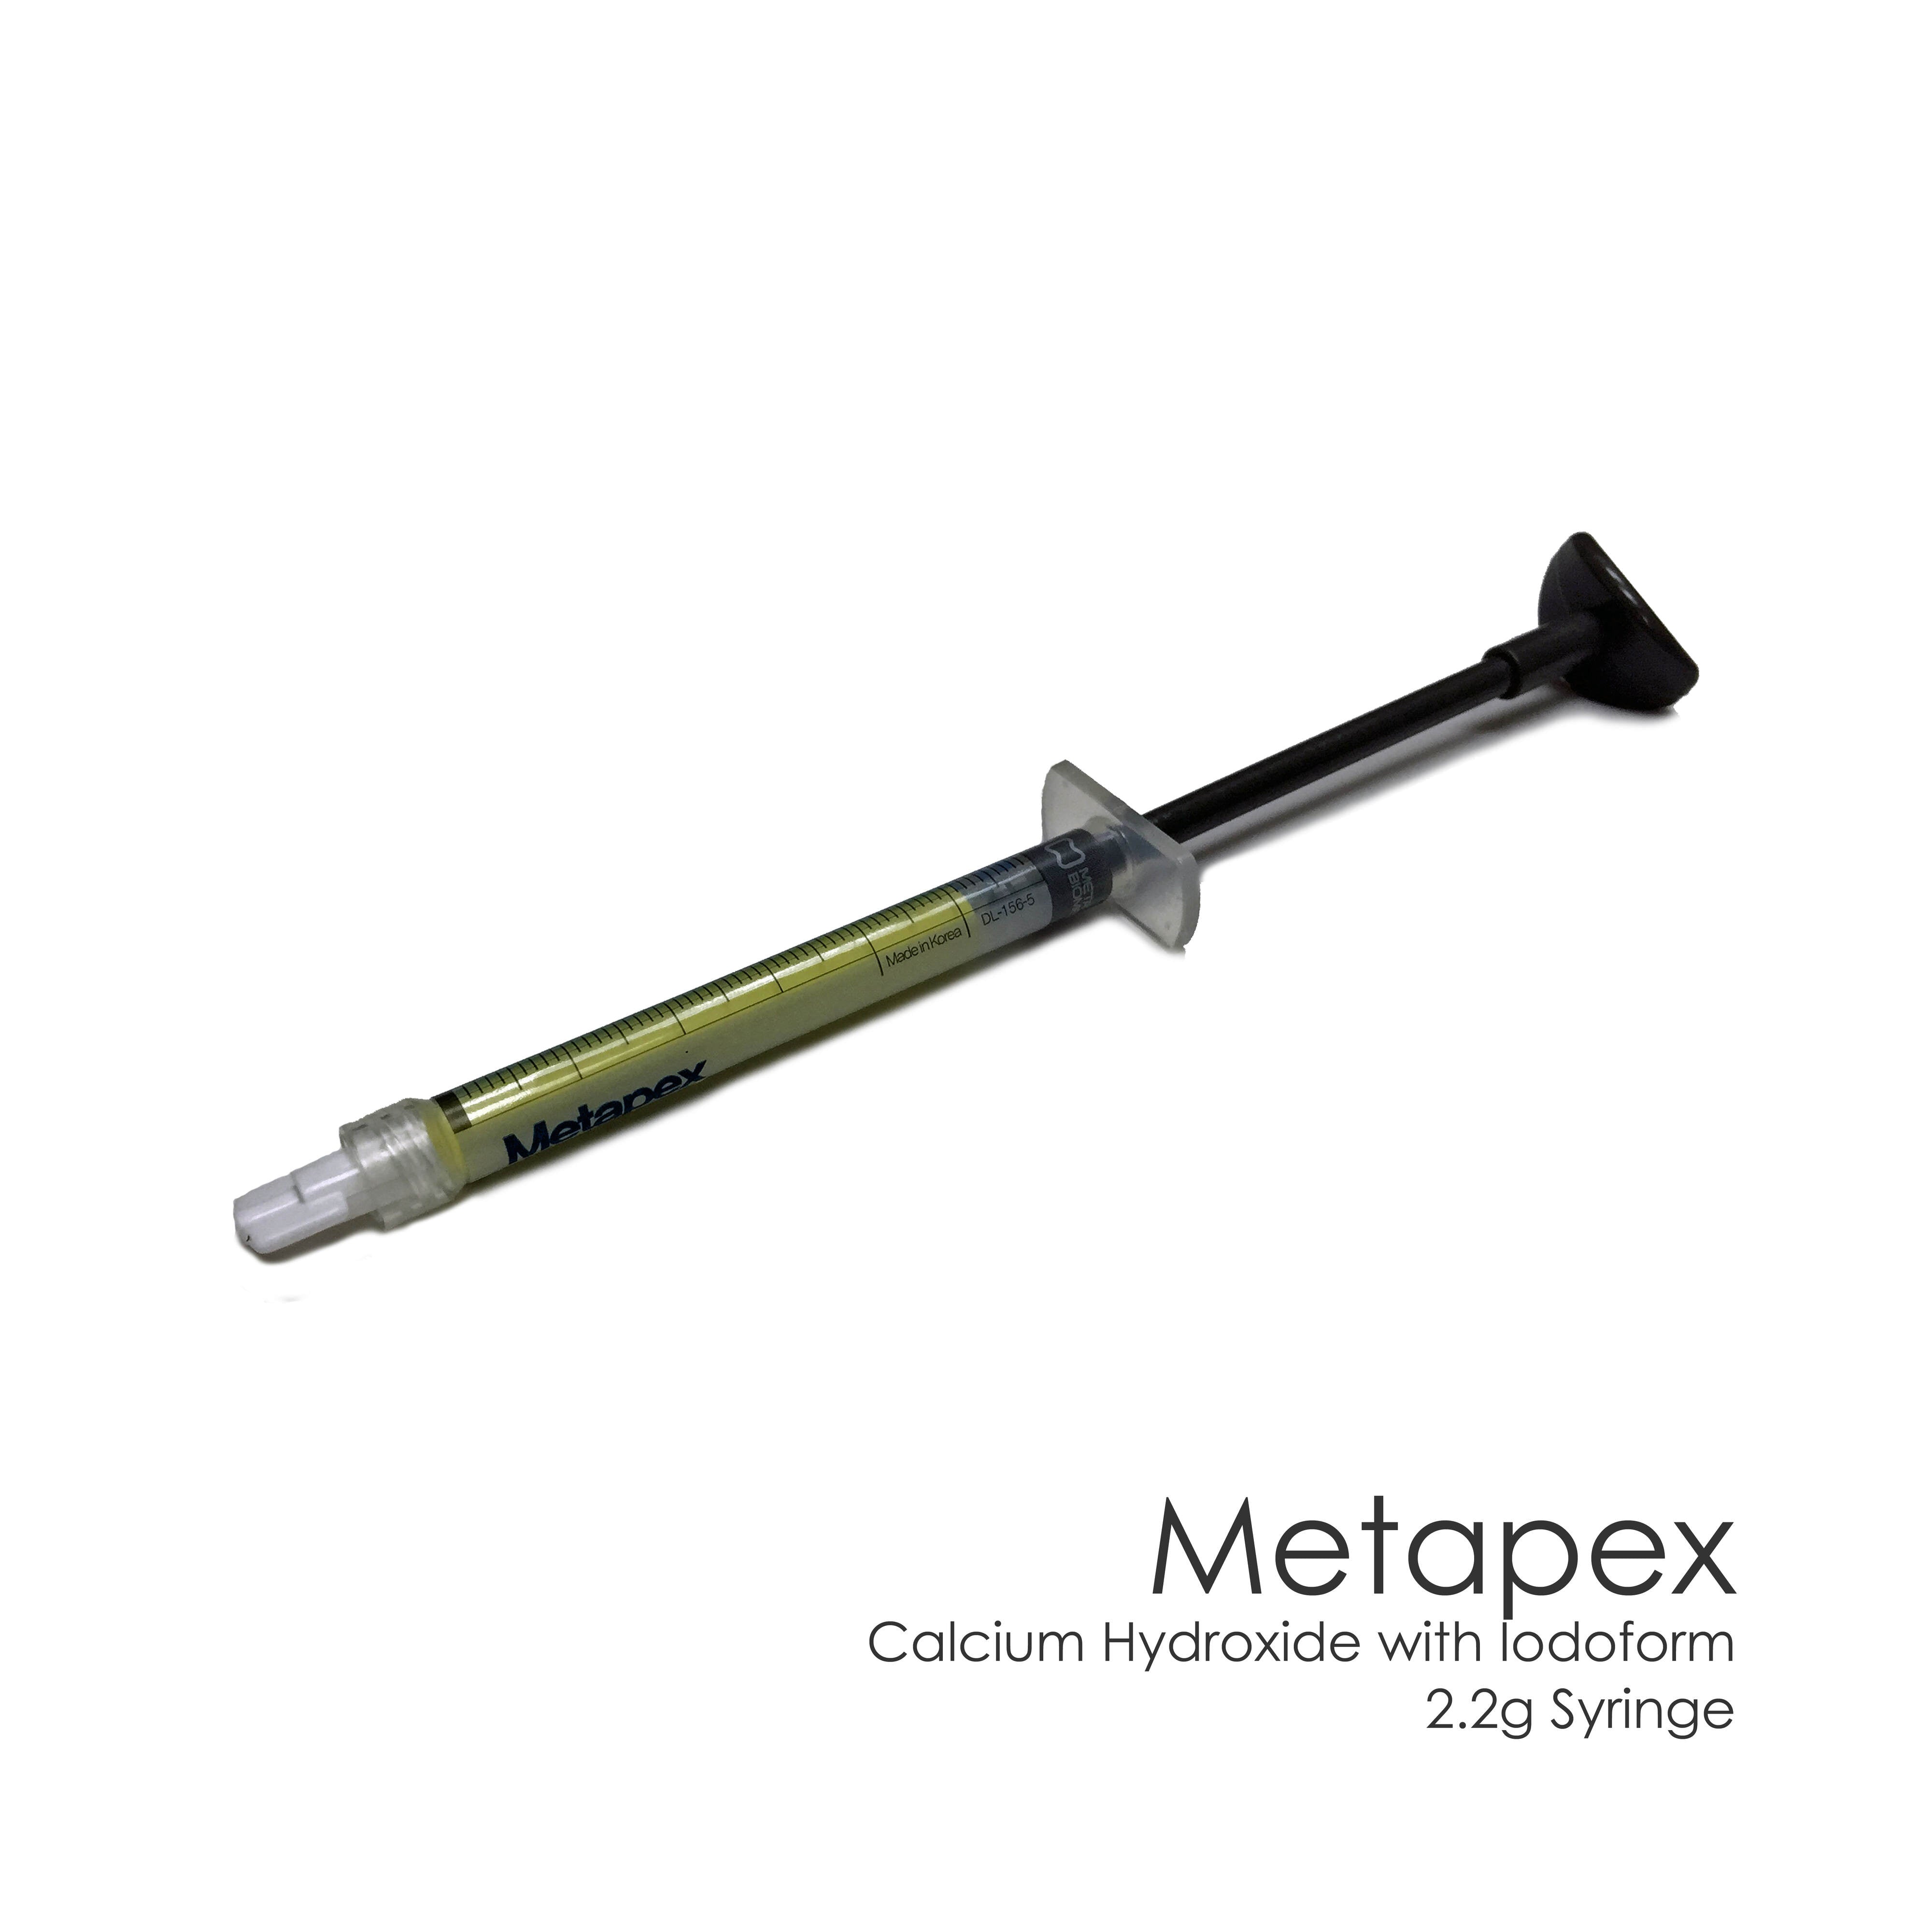 Metapex - Calcium Hydroxide With Iodoform